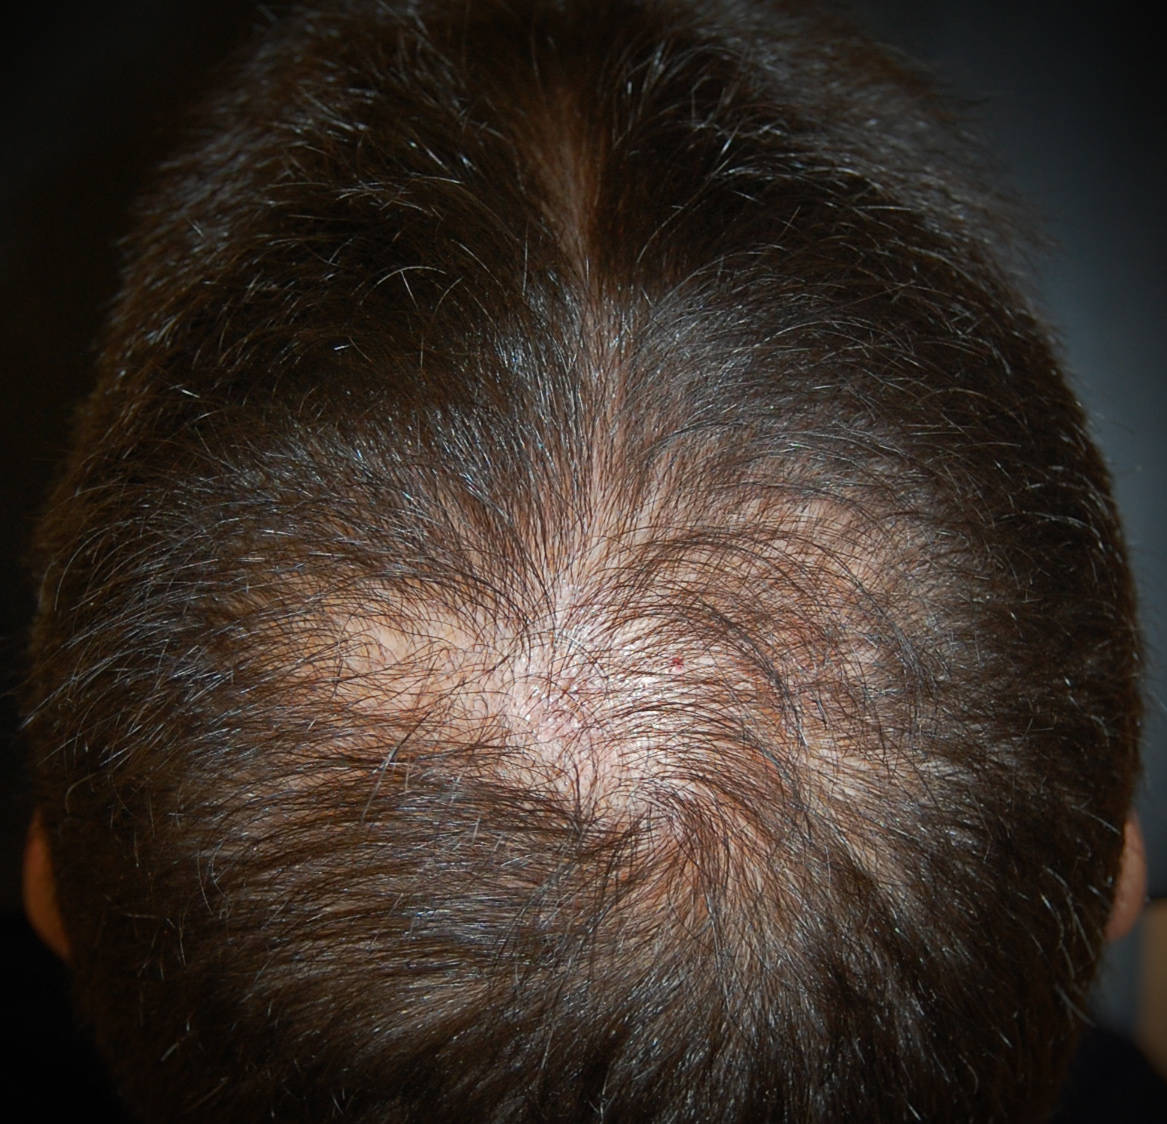 Alopecia androgenetica maschile: l'assottigliamento dei capelli al vertice provoca la "chierica"